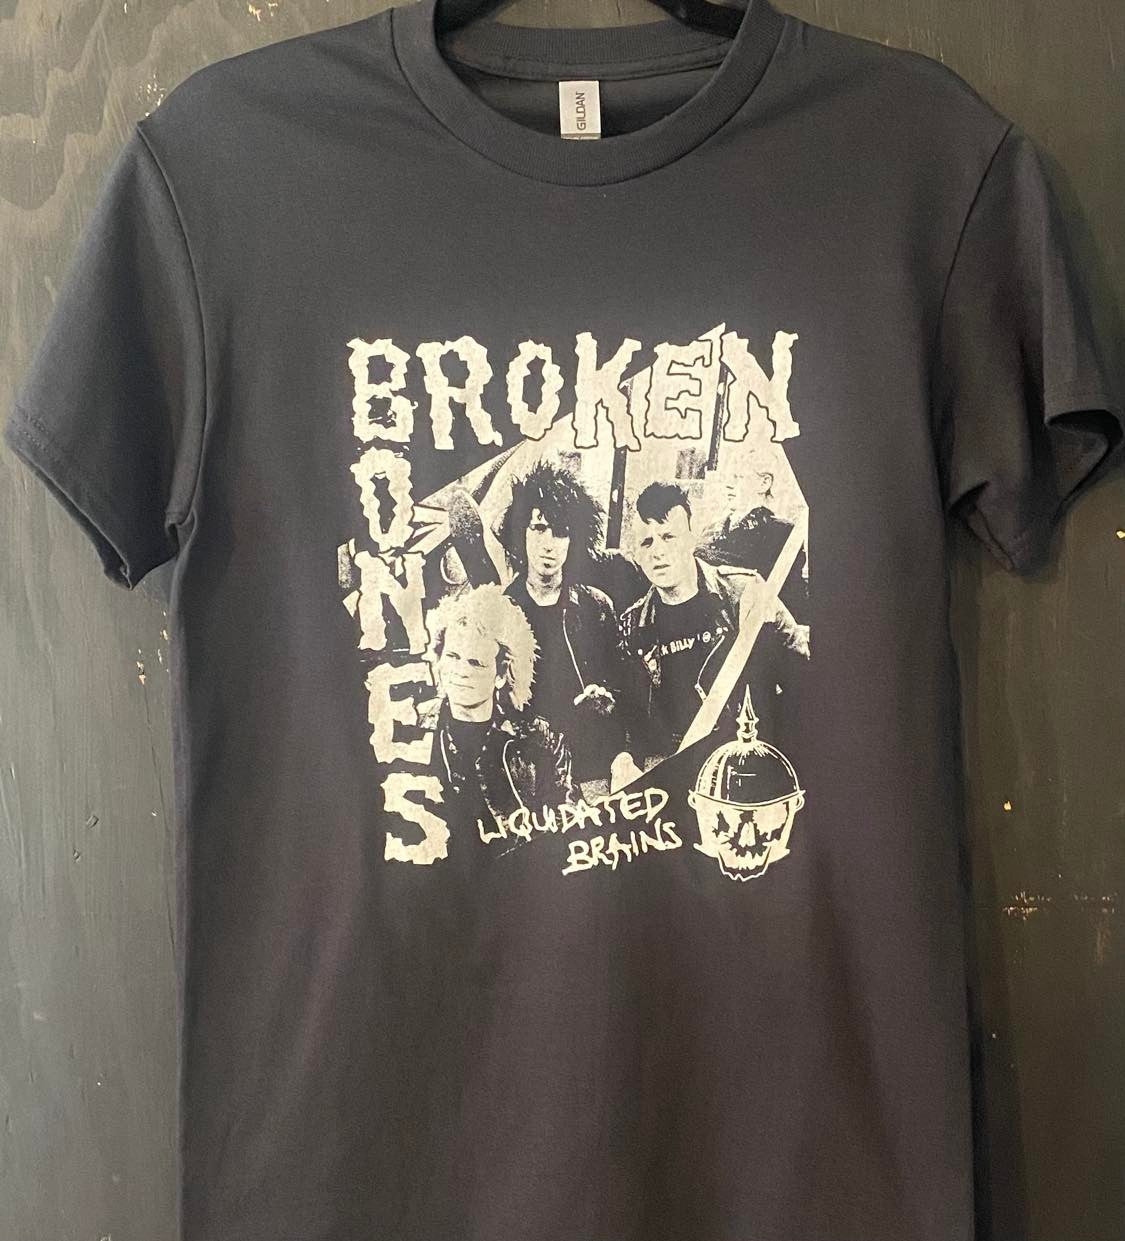 BROKEN BONES | liquidated brains t-shirt